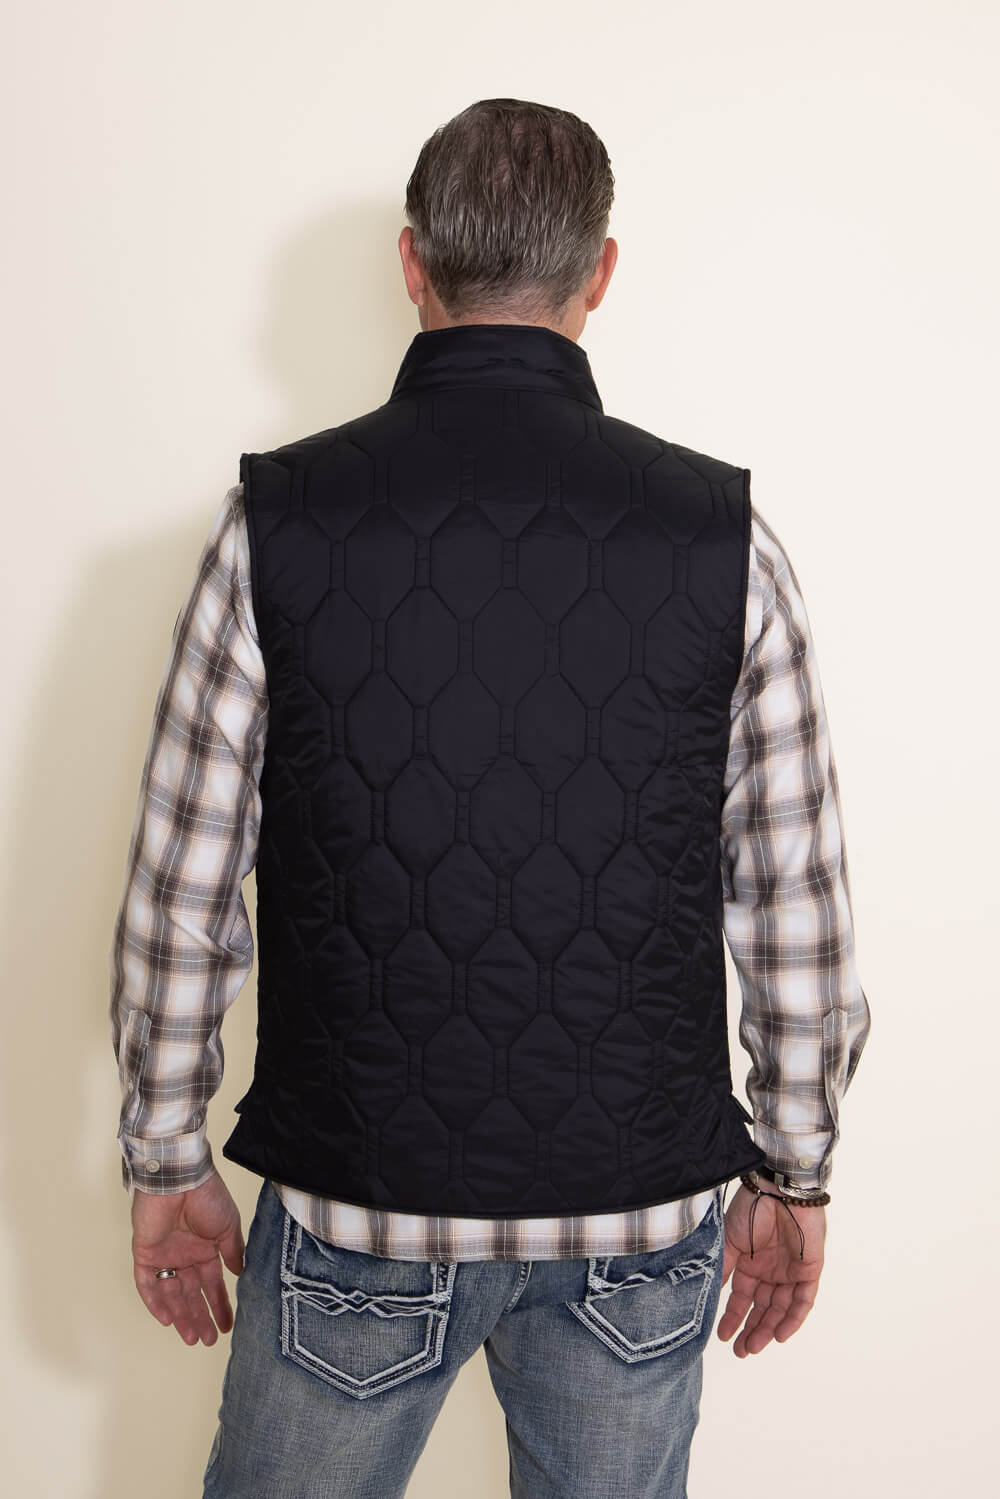 Weatherproof Vintage Quilted Vest for Men in Black